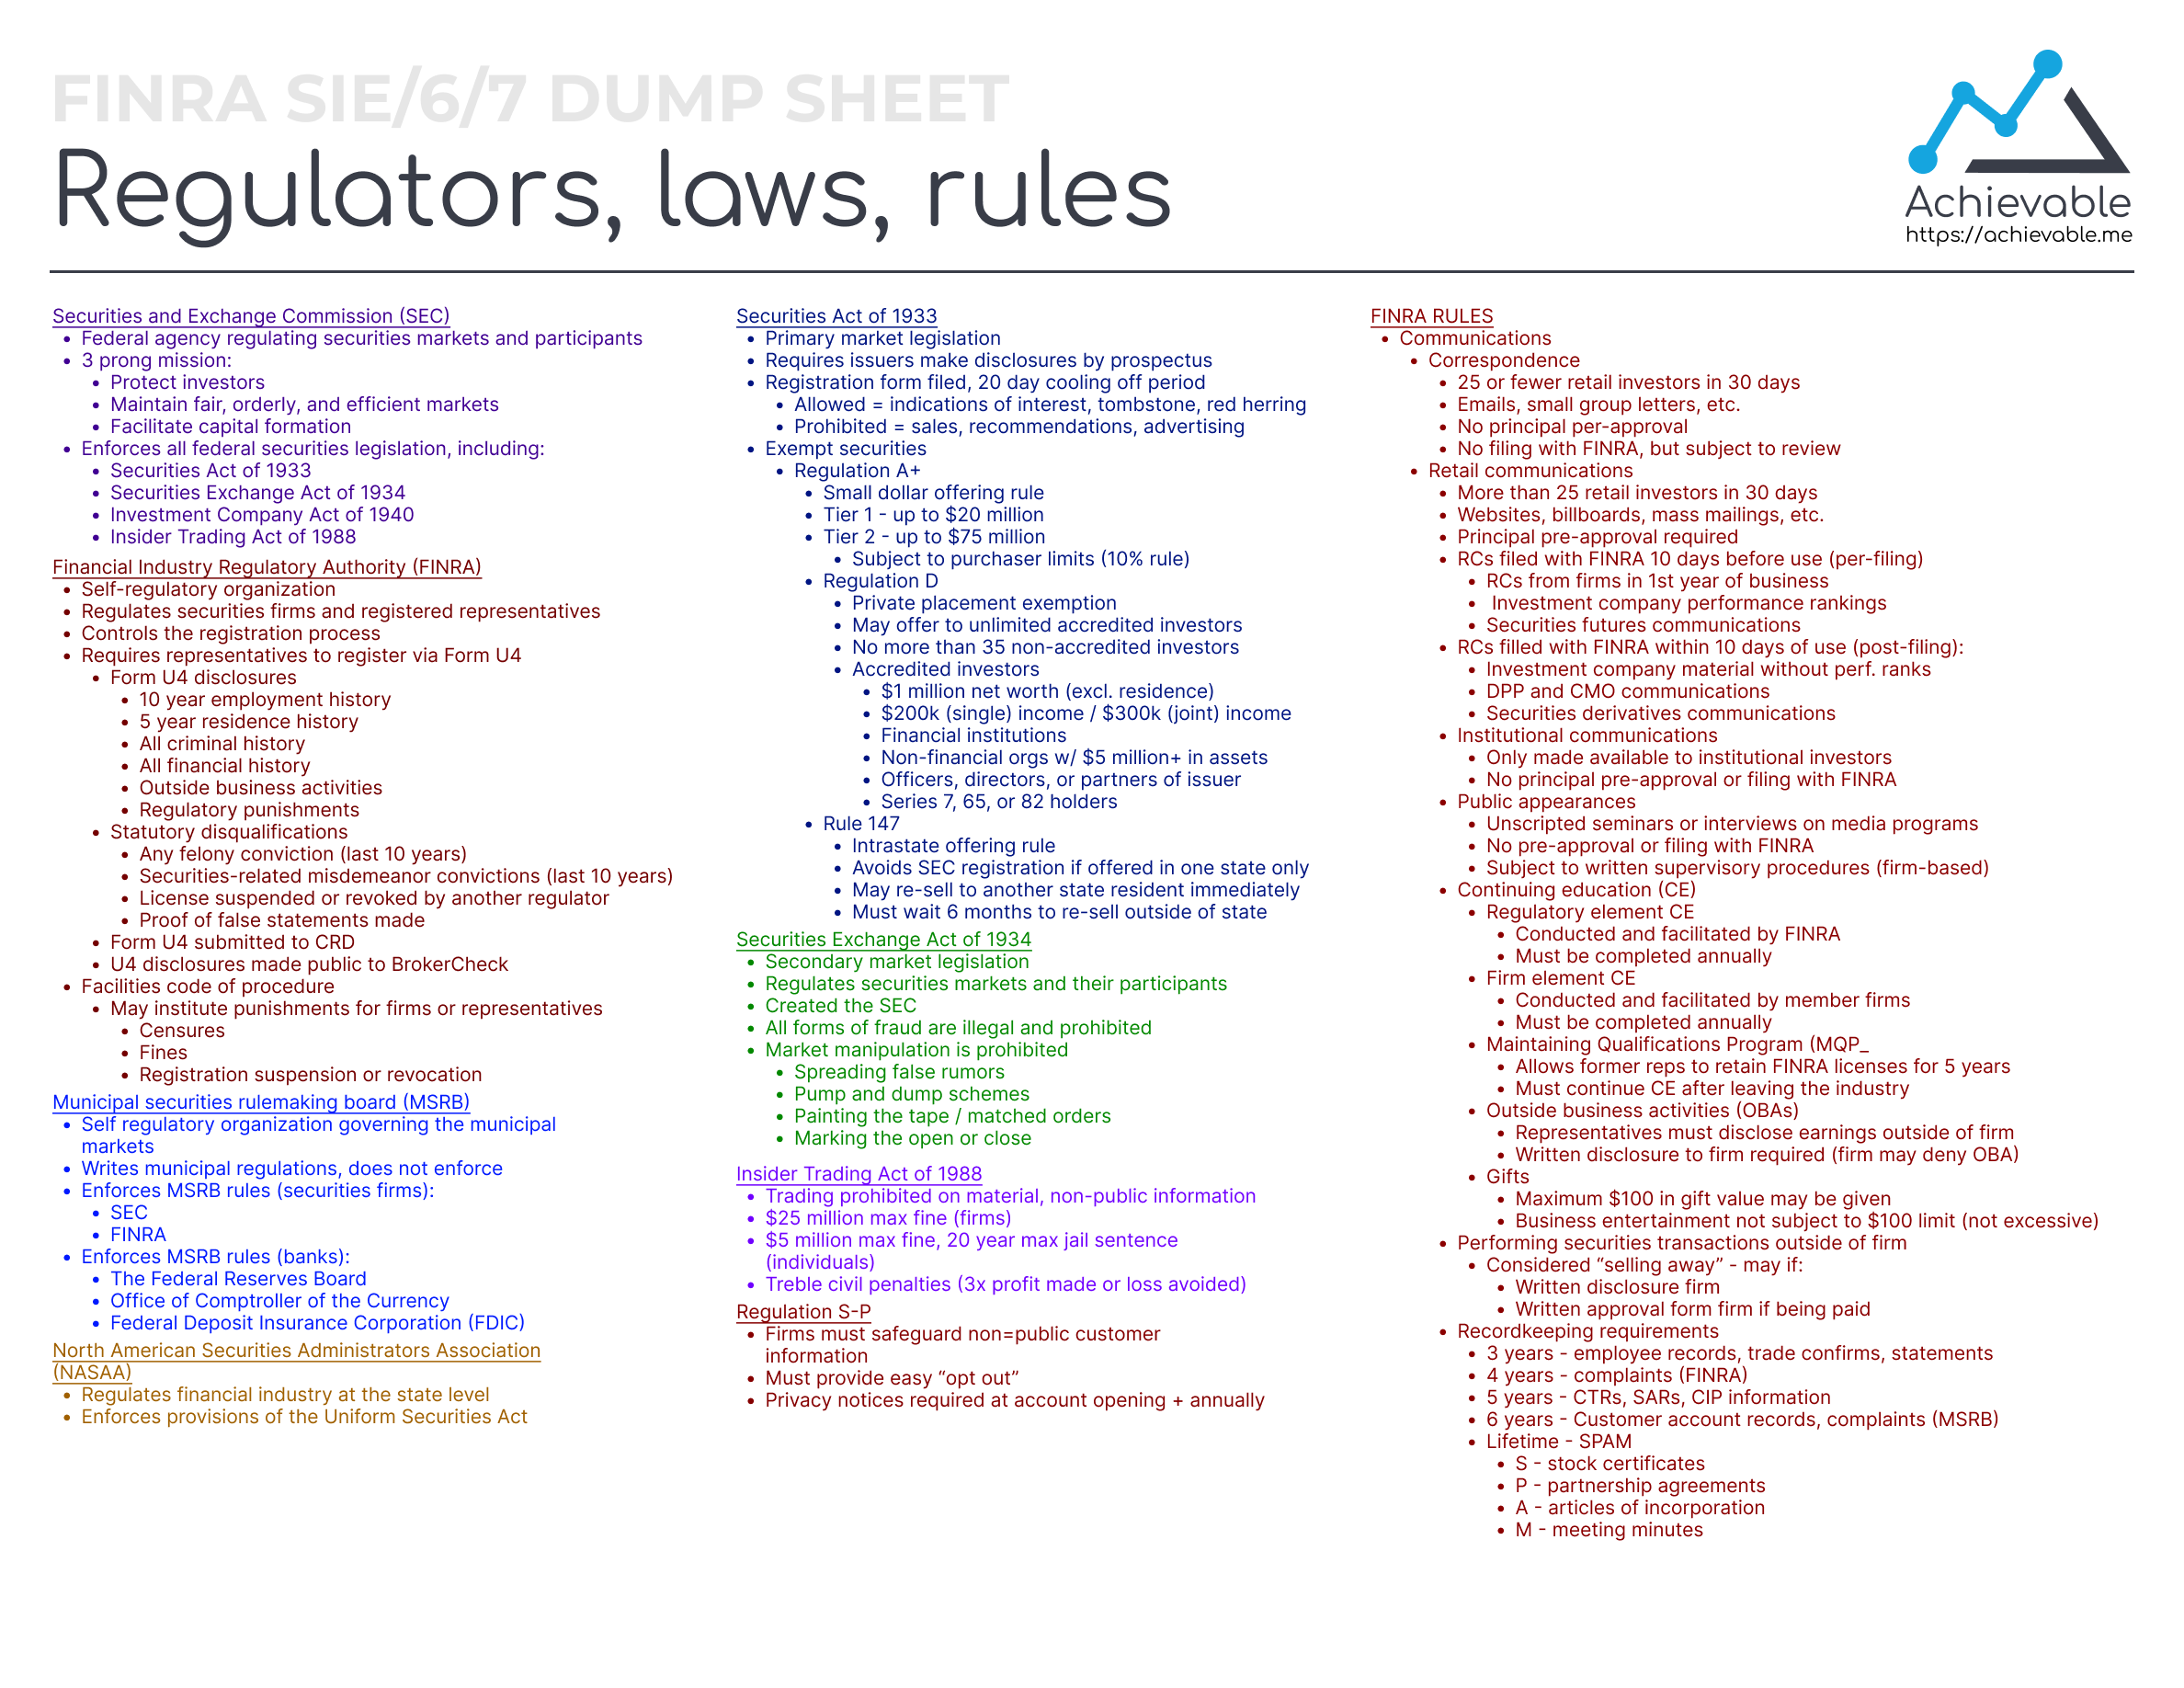 Series 7 Exam Dump Sheet - Regulators, Laws, and Rules